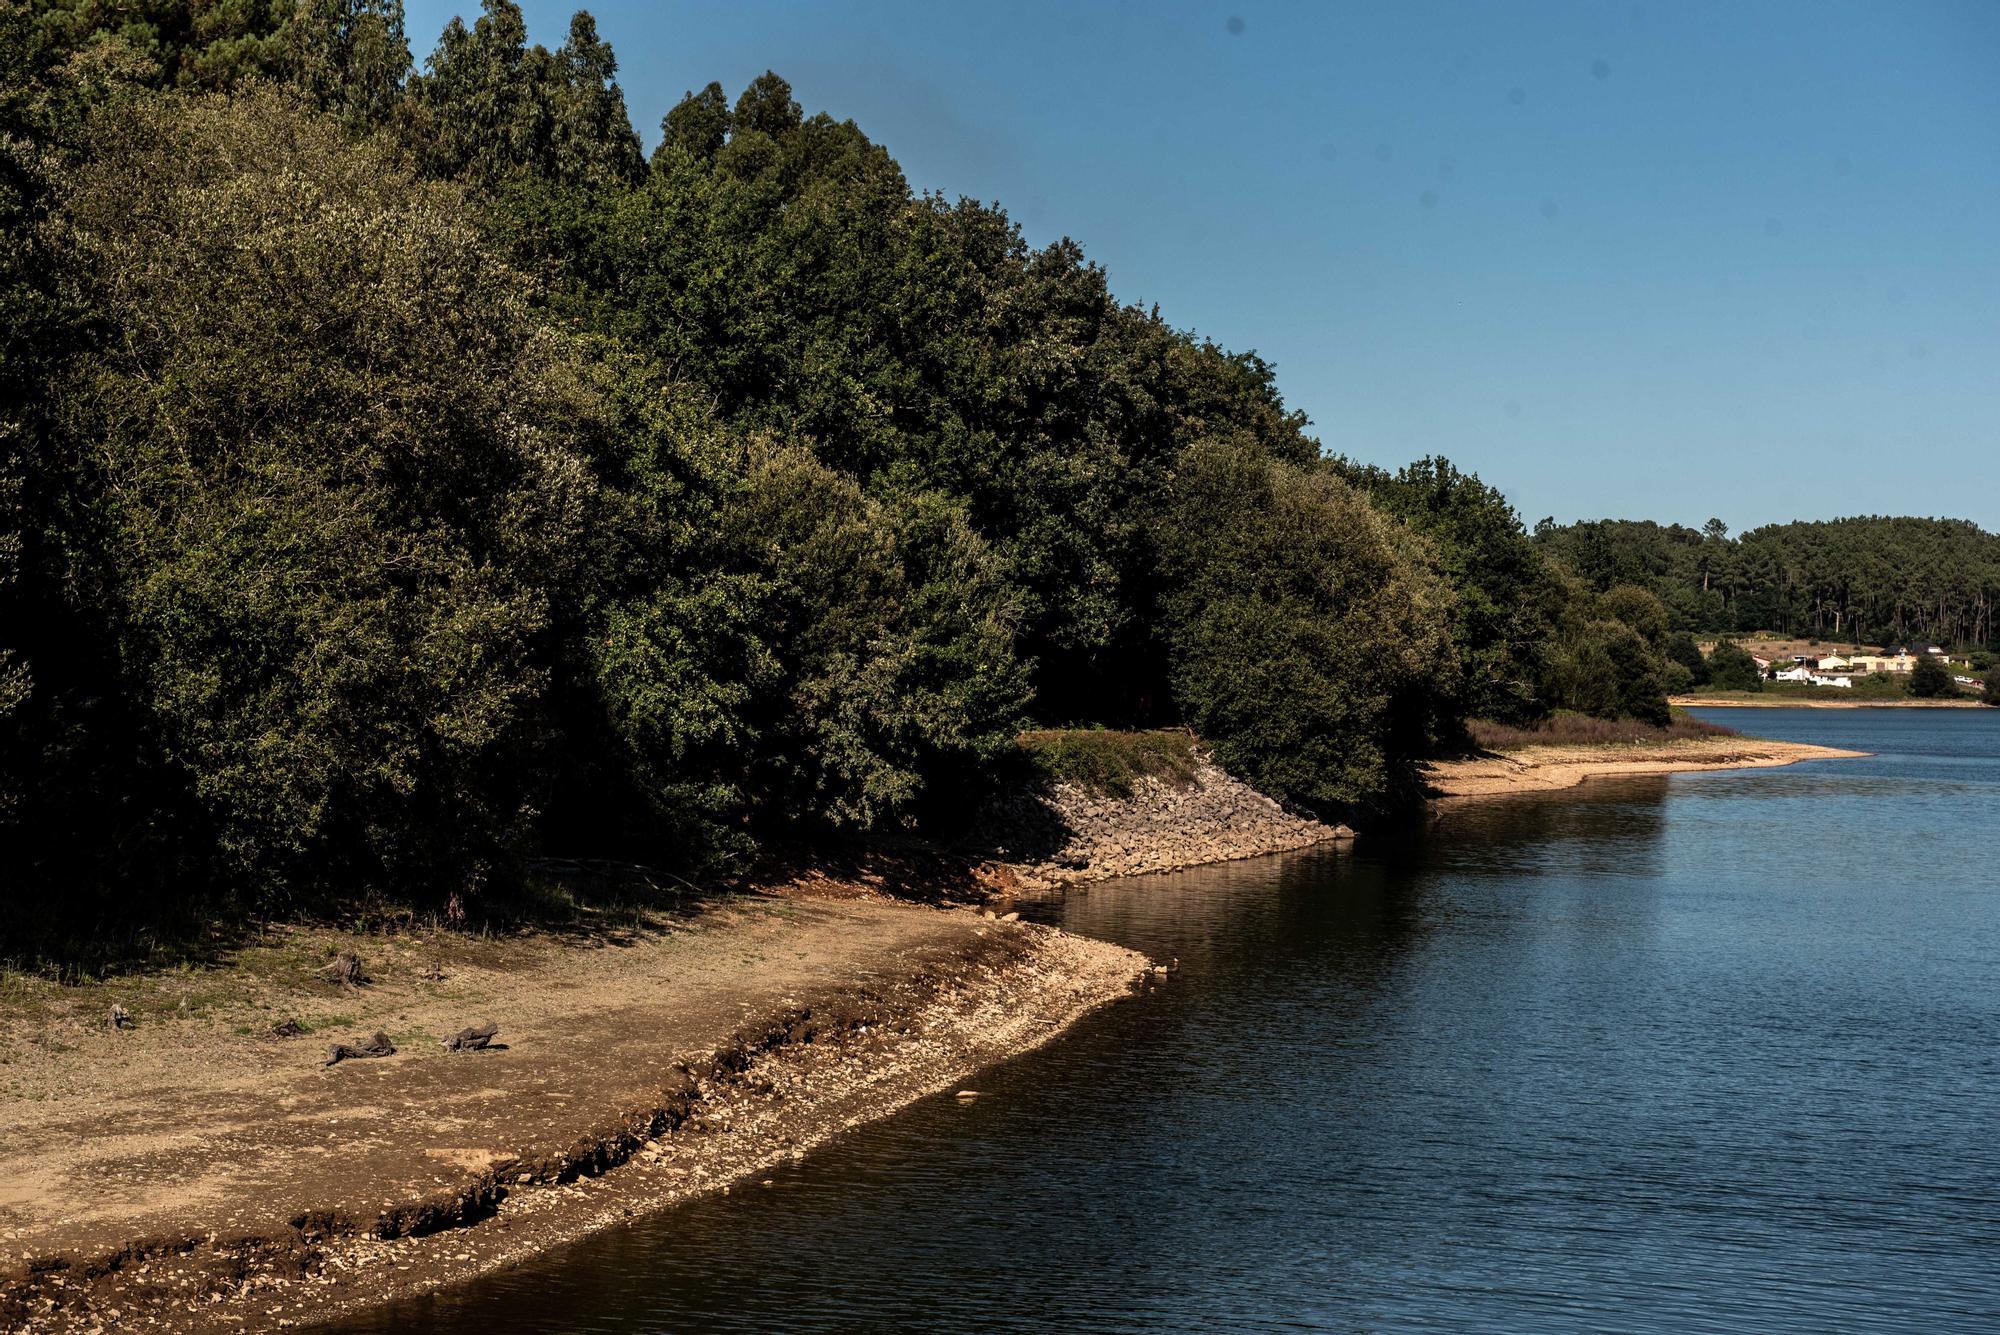 Activada la alerta de sequía prolongada en las cuencas de A Coruña, Arteixo y Betanzos